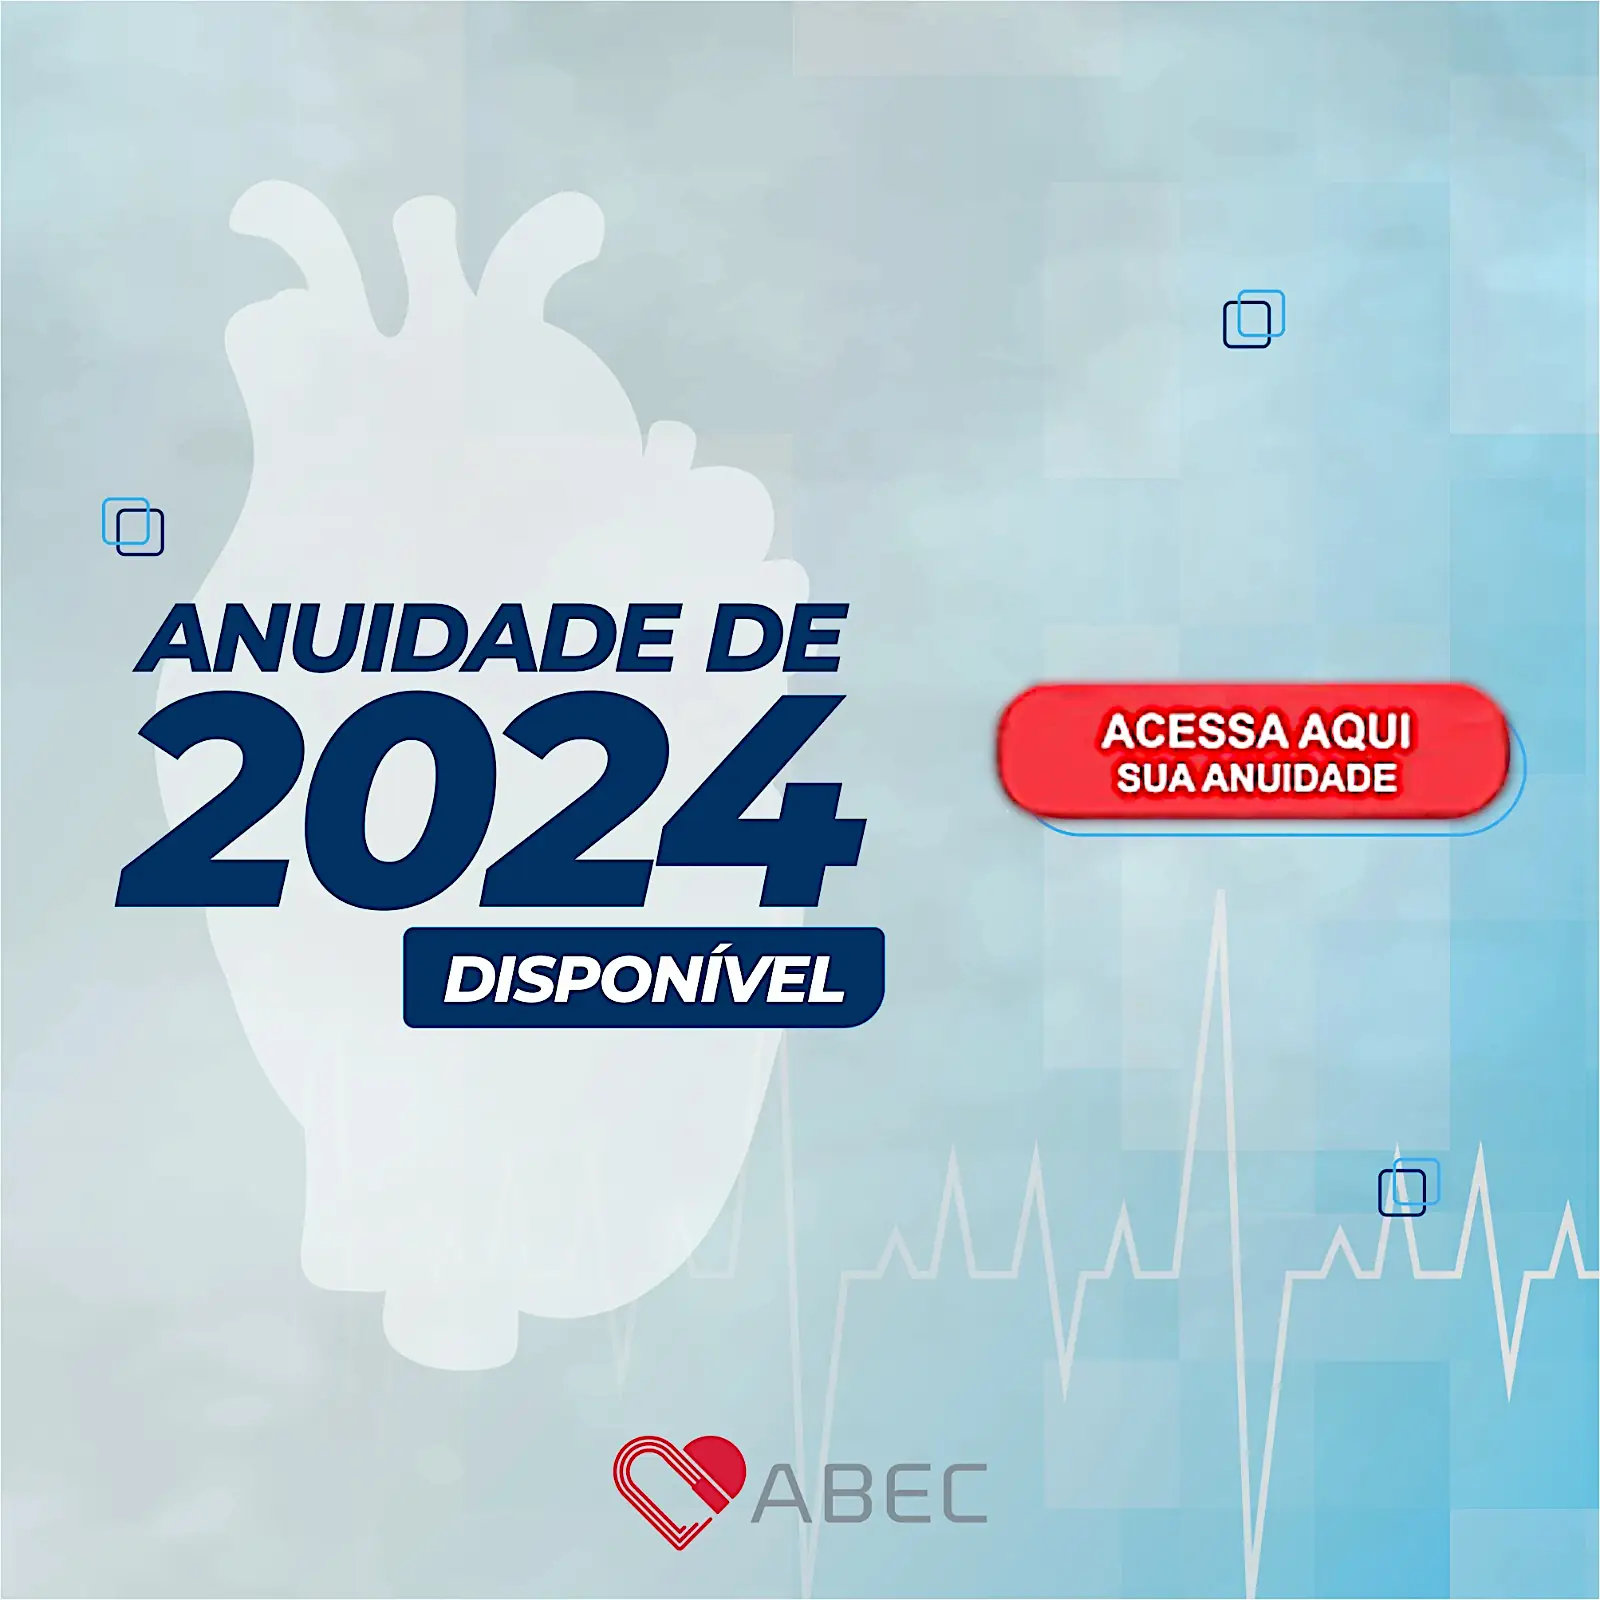 Renove sua Anuidade 2024 com a ABEC e desfrute de benefícios